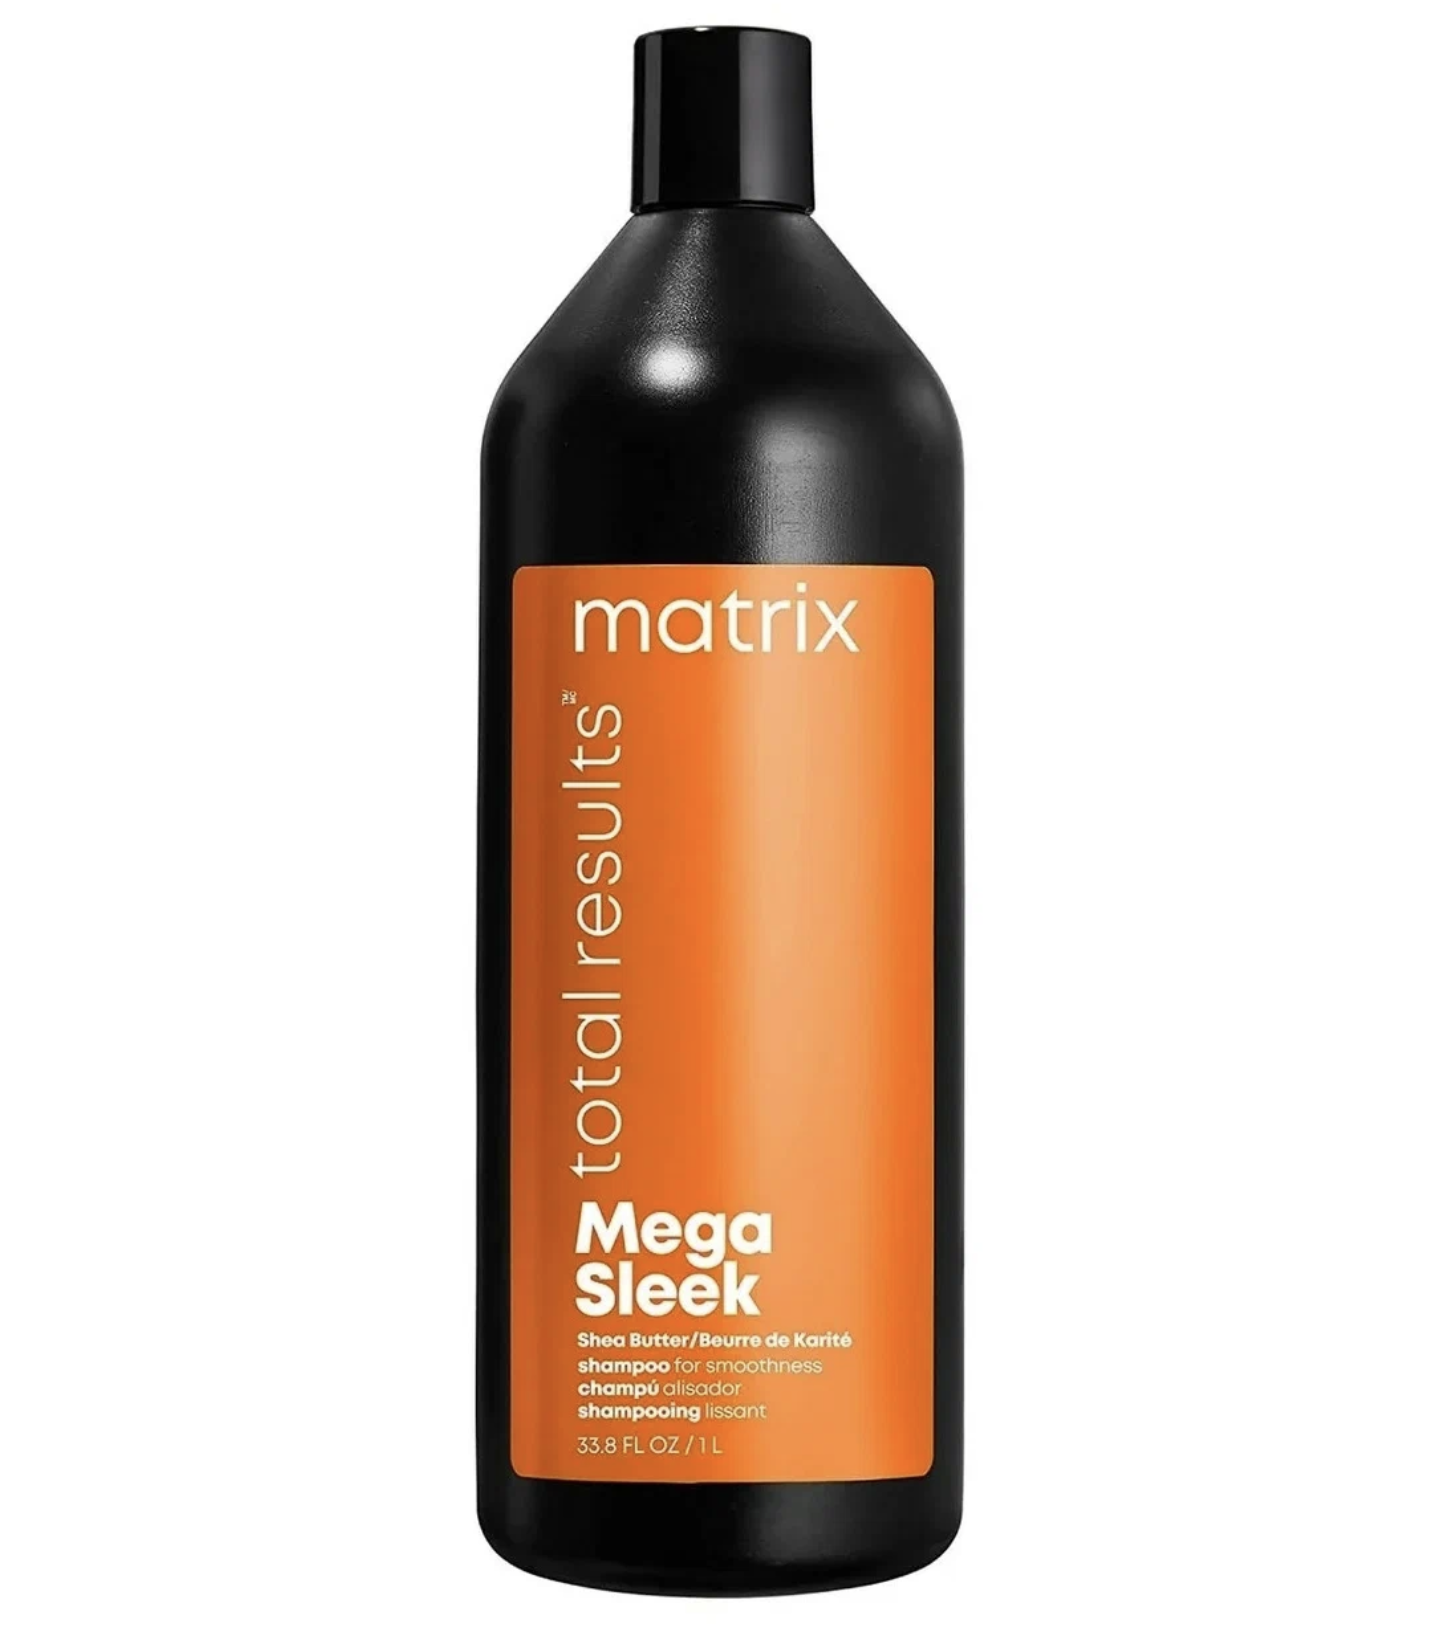   / Matrix Mega Sleek -     Shea Butter 1 